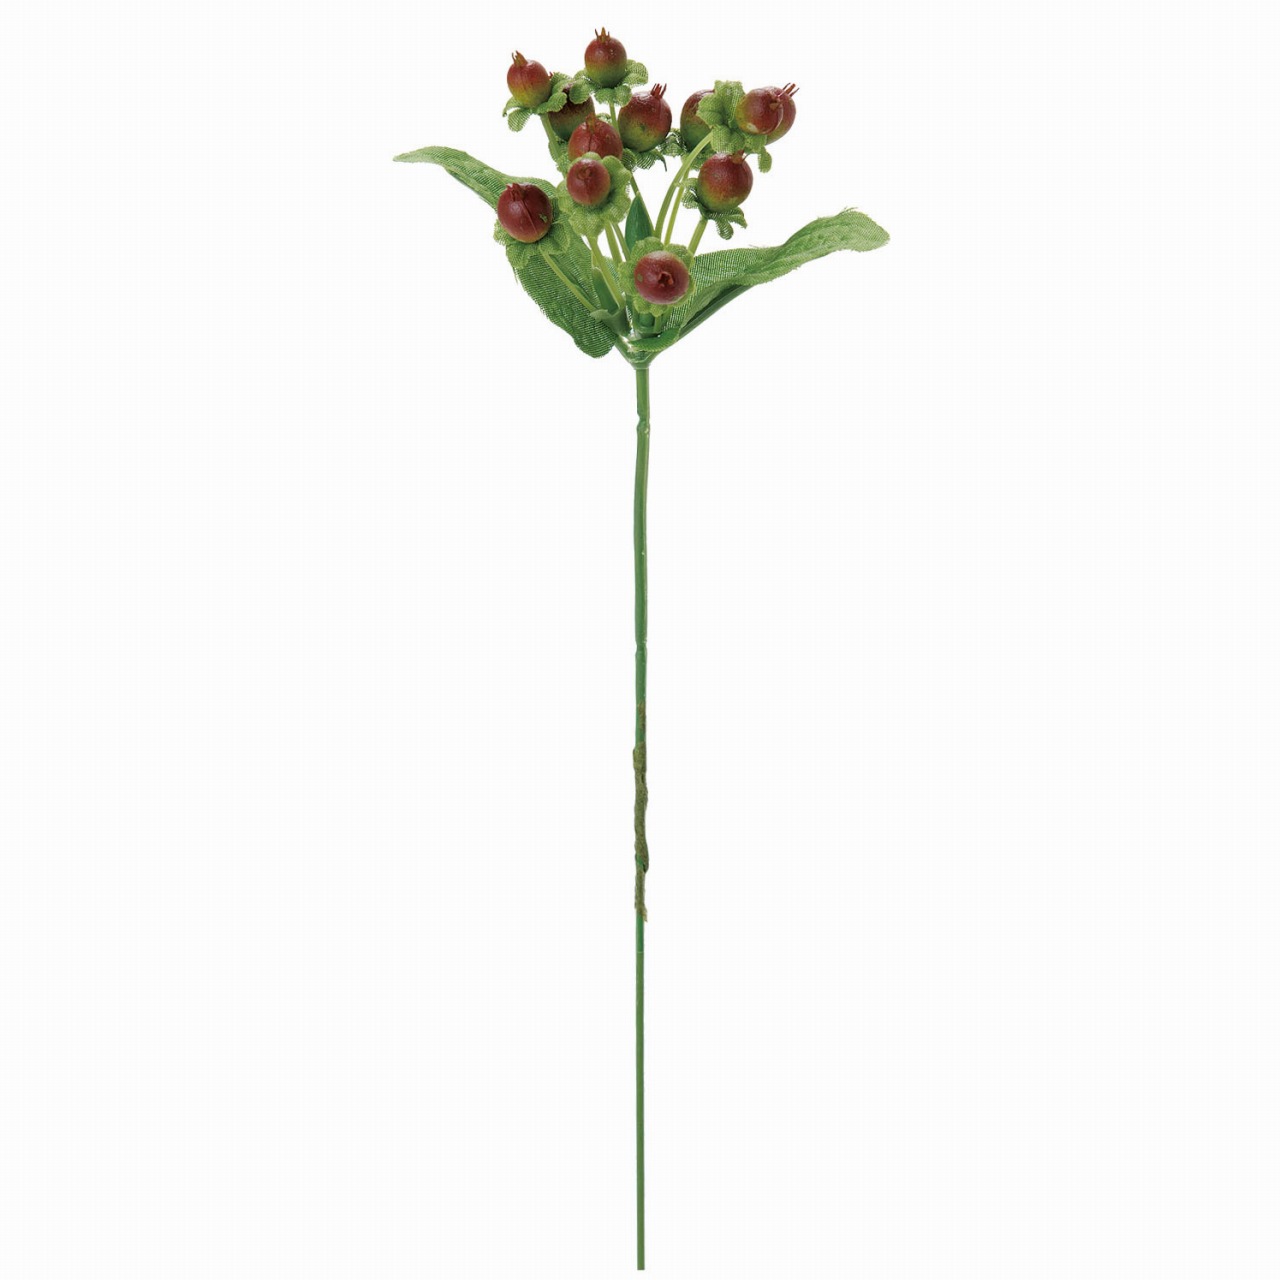 マイフラ 通販 Magiq ヒペリカム ピック ブラウンレッド アーティフィシャルフラワー 造花 Fm 1束 実もの 実の直径 約1 1 5 全長 約16cm ブラウンレッド Magiq アーティフィシャルフラワー 造花 全国にmagiq 花器 花資材などをお届けします